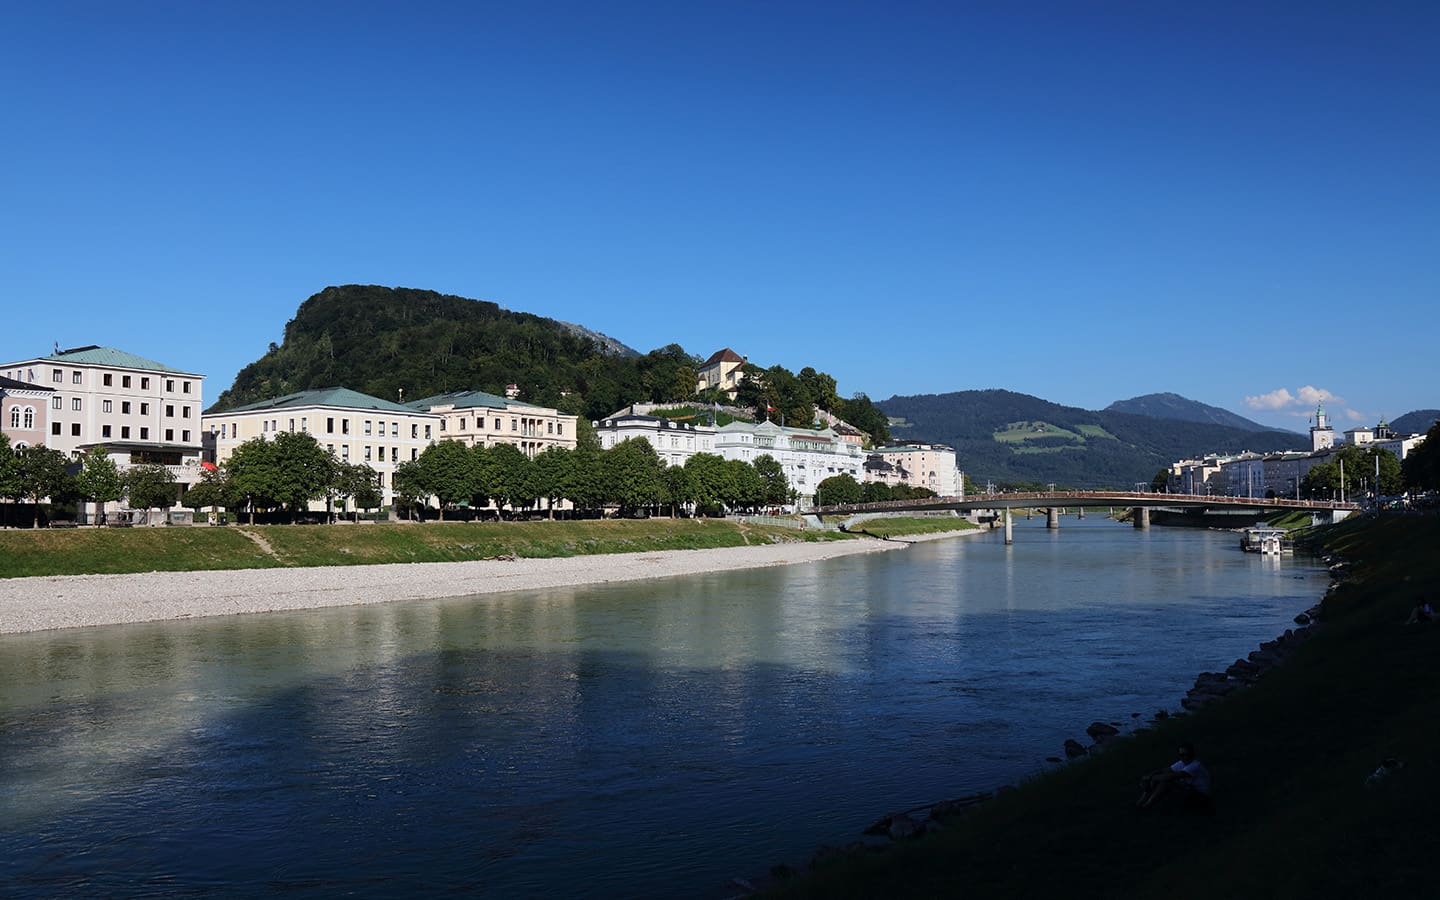 Stadtblick Salzburg mit Elisabethkai, Flussufer und Kapuzinerberg, Österreich